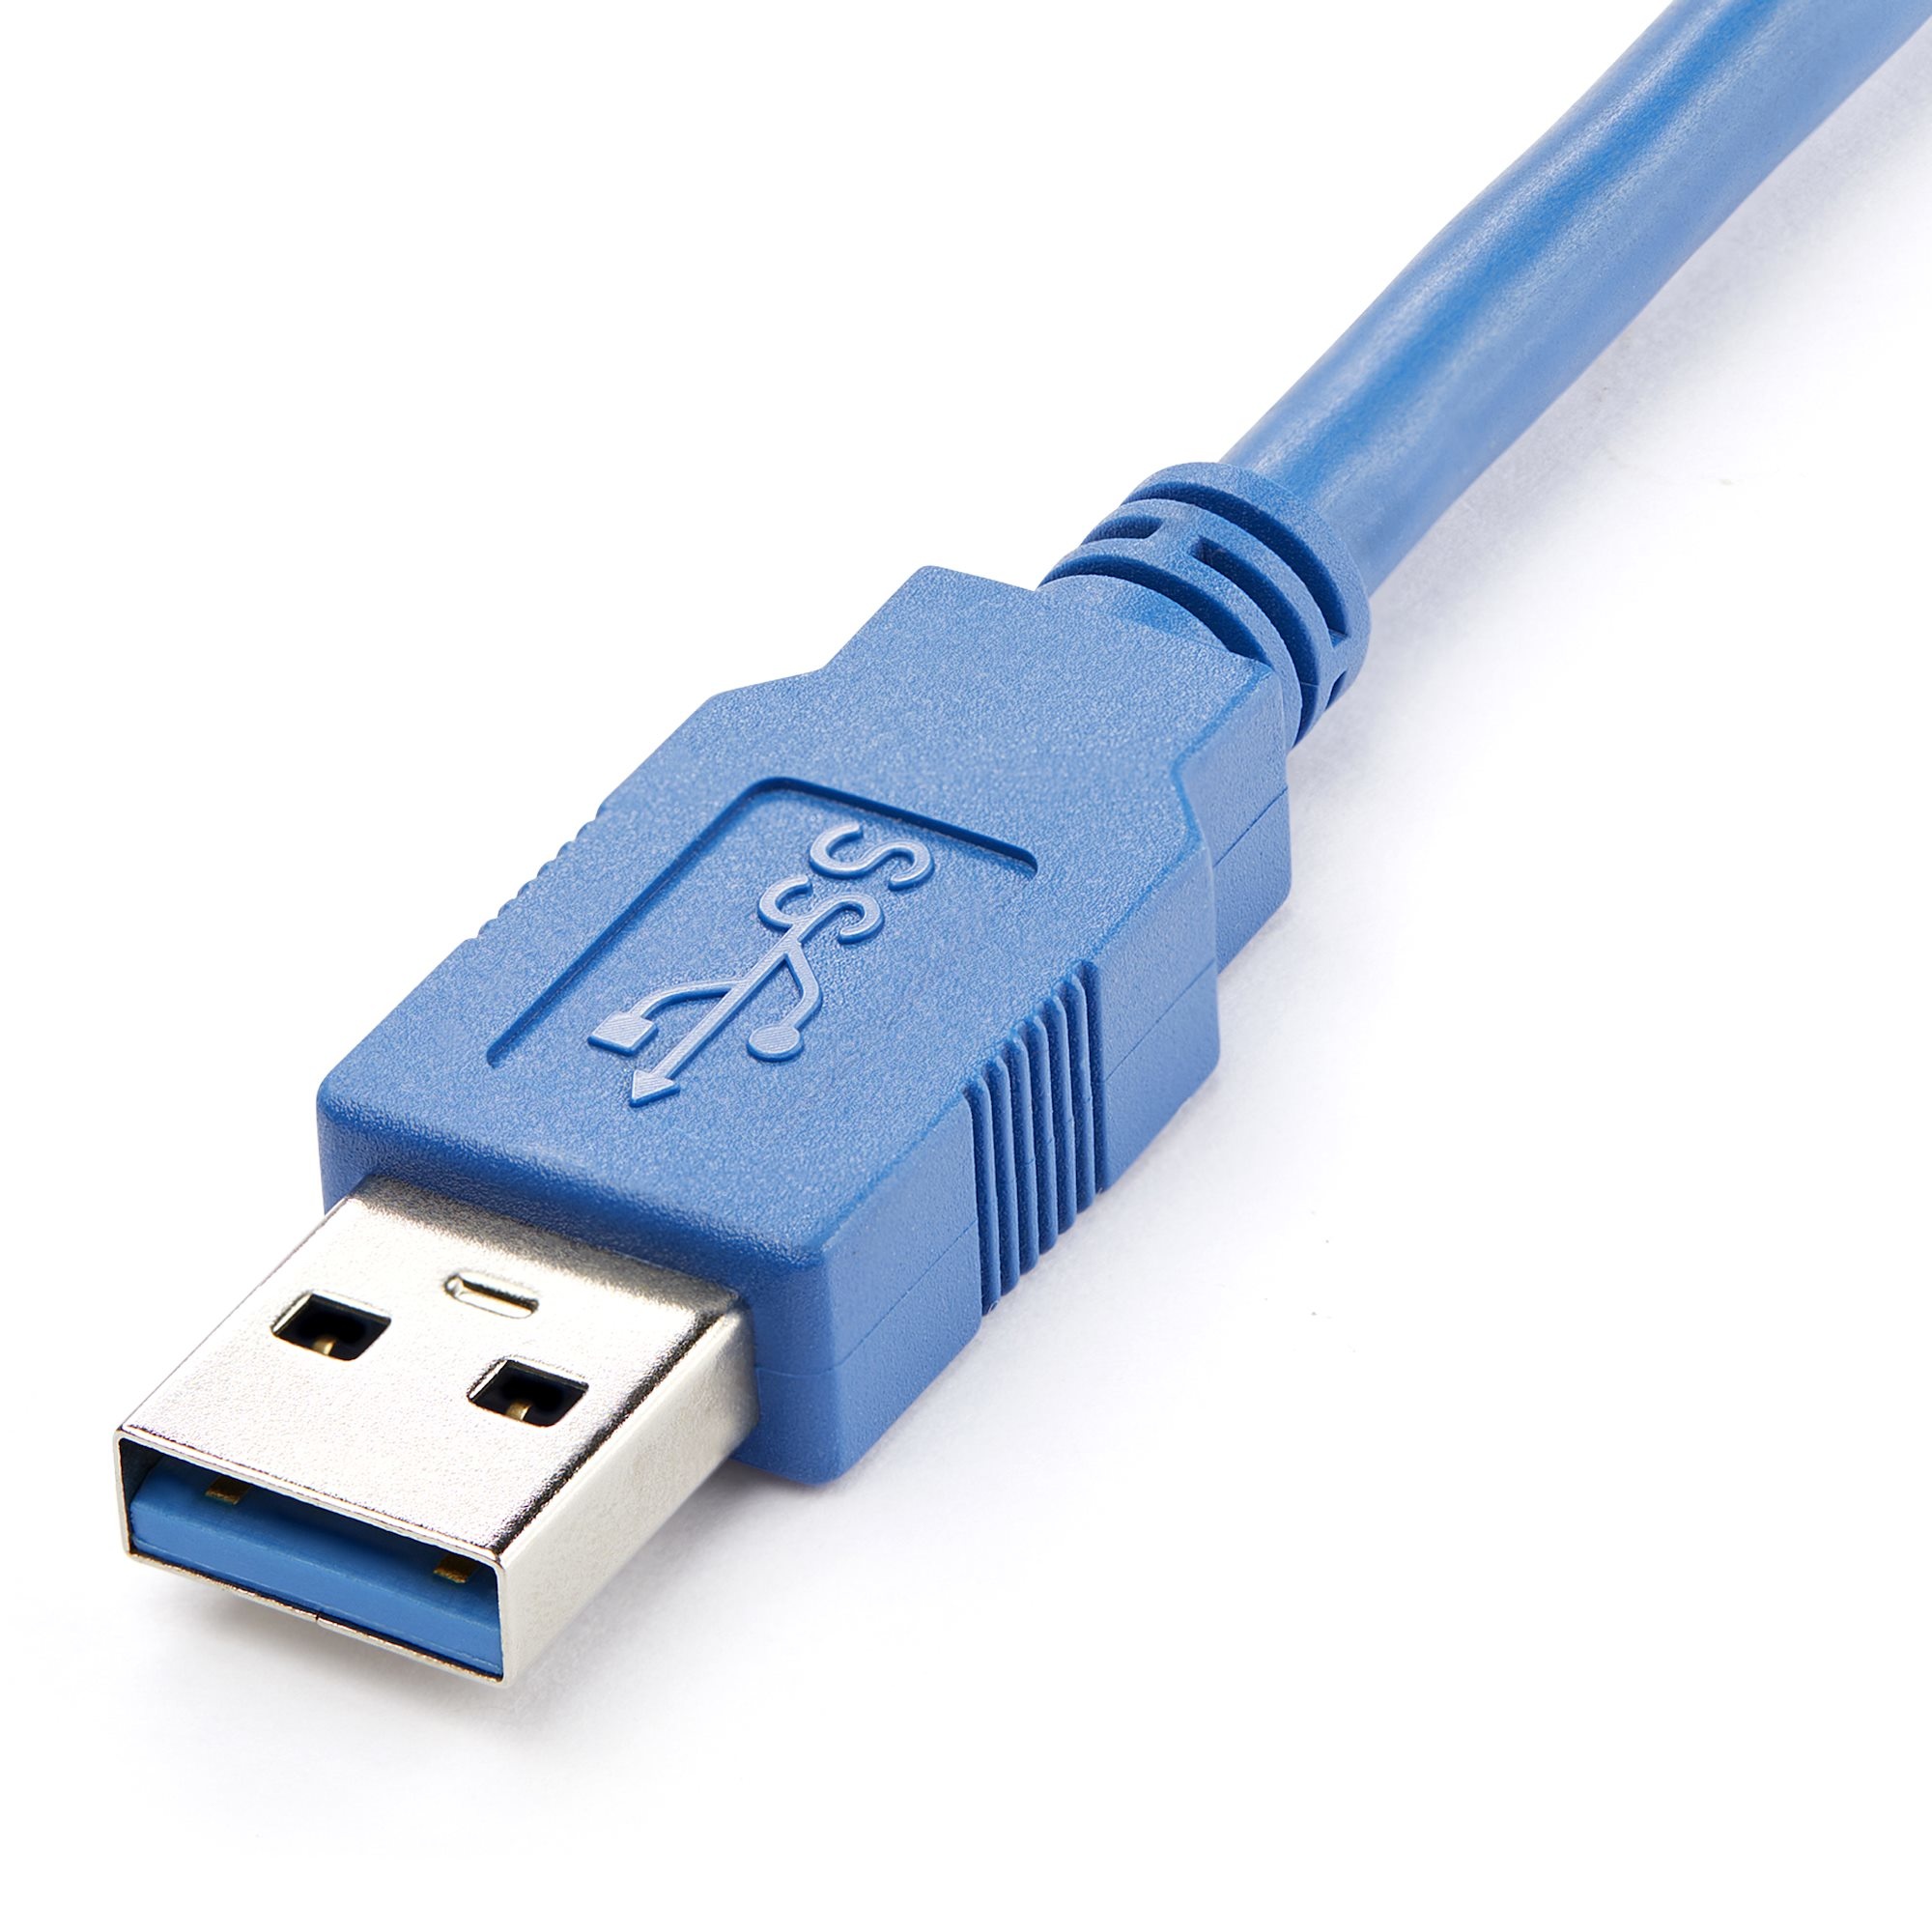 5 ft Desktop USB 3.0 Extension Cable thumbnail